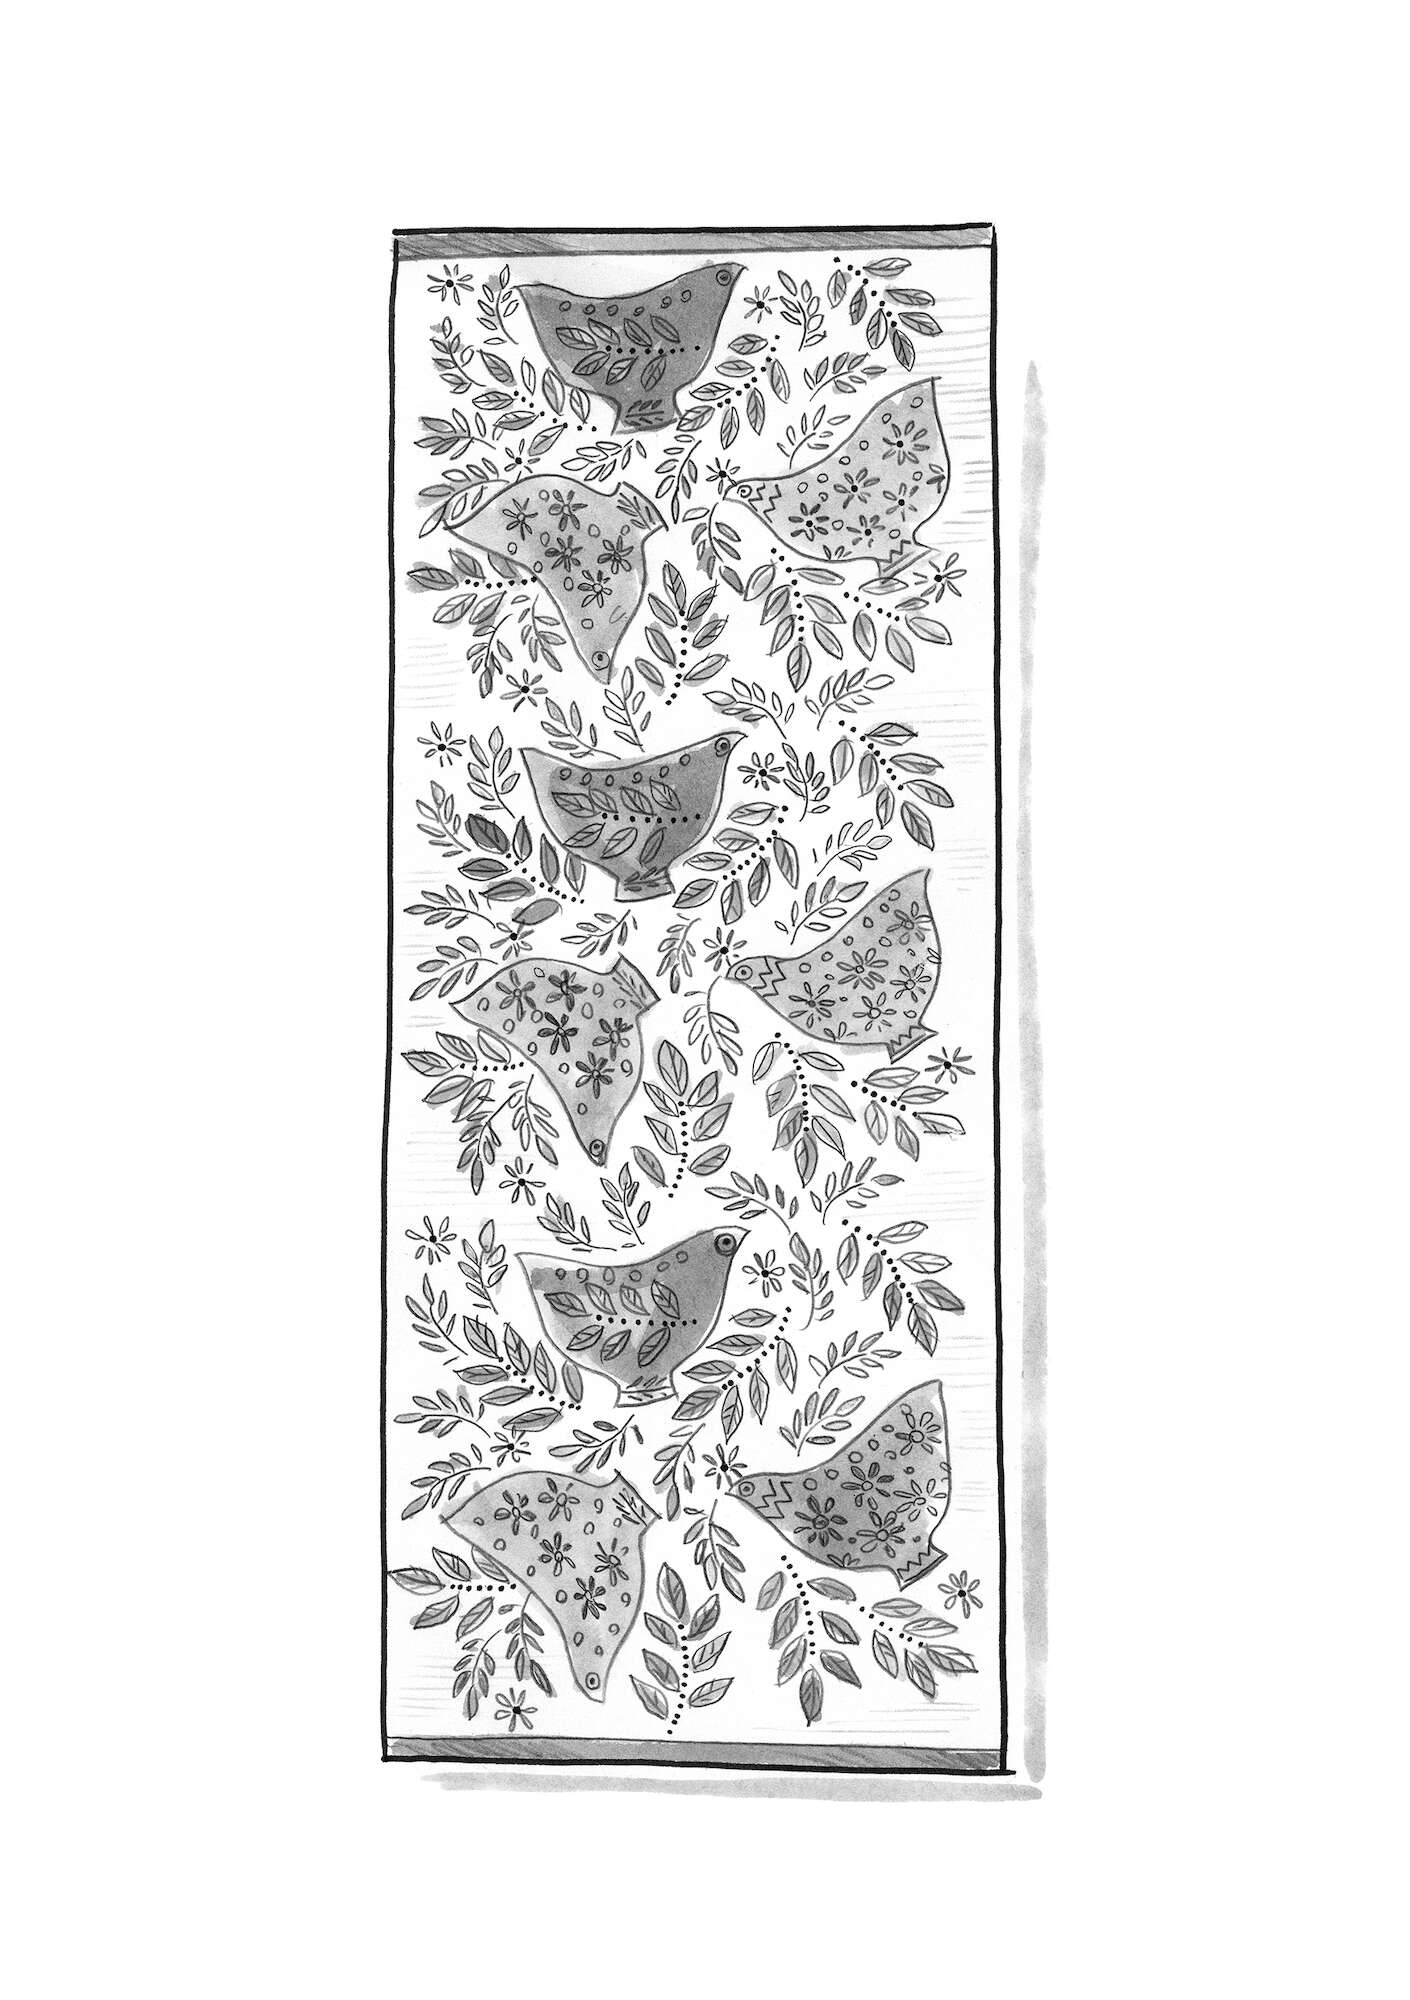 Vloerkleed  Okarina  van biologisch katoen met print indigofera